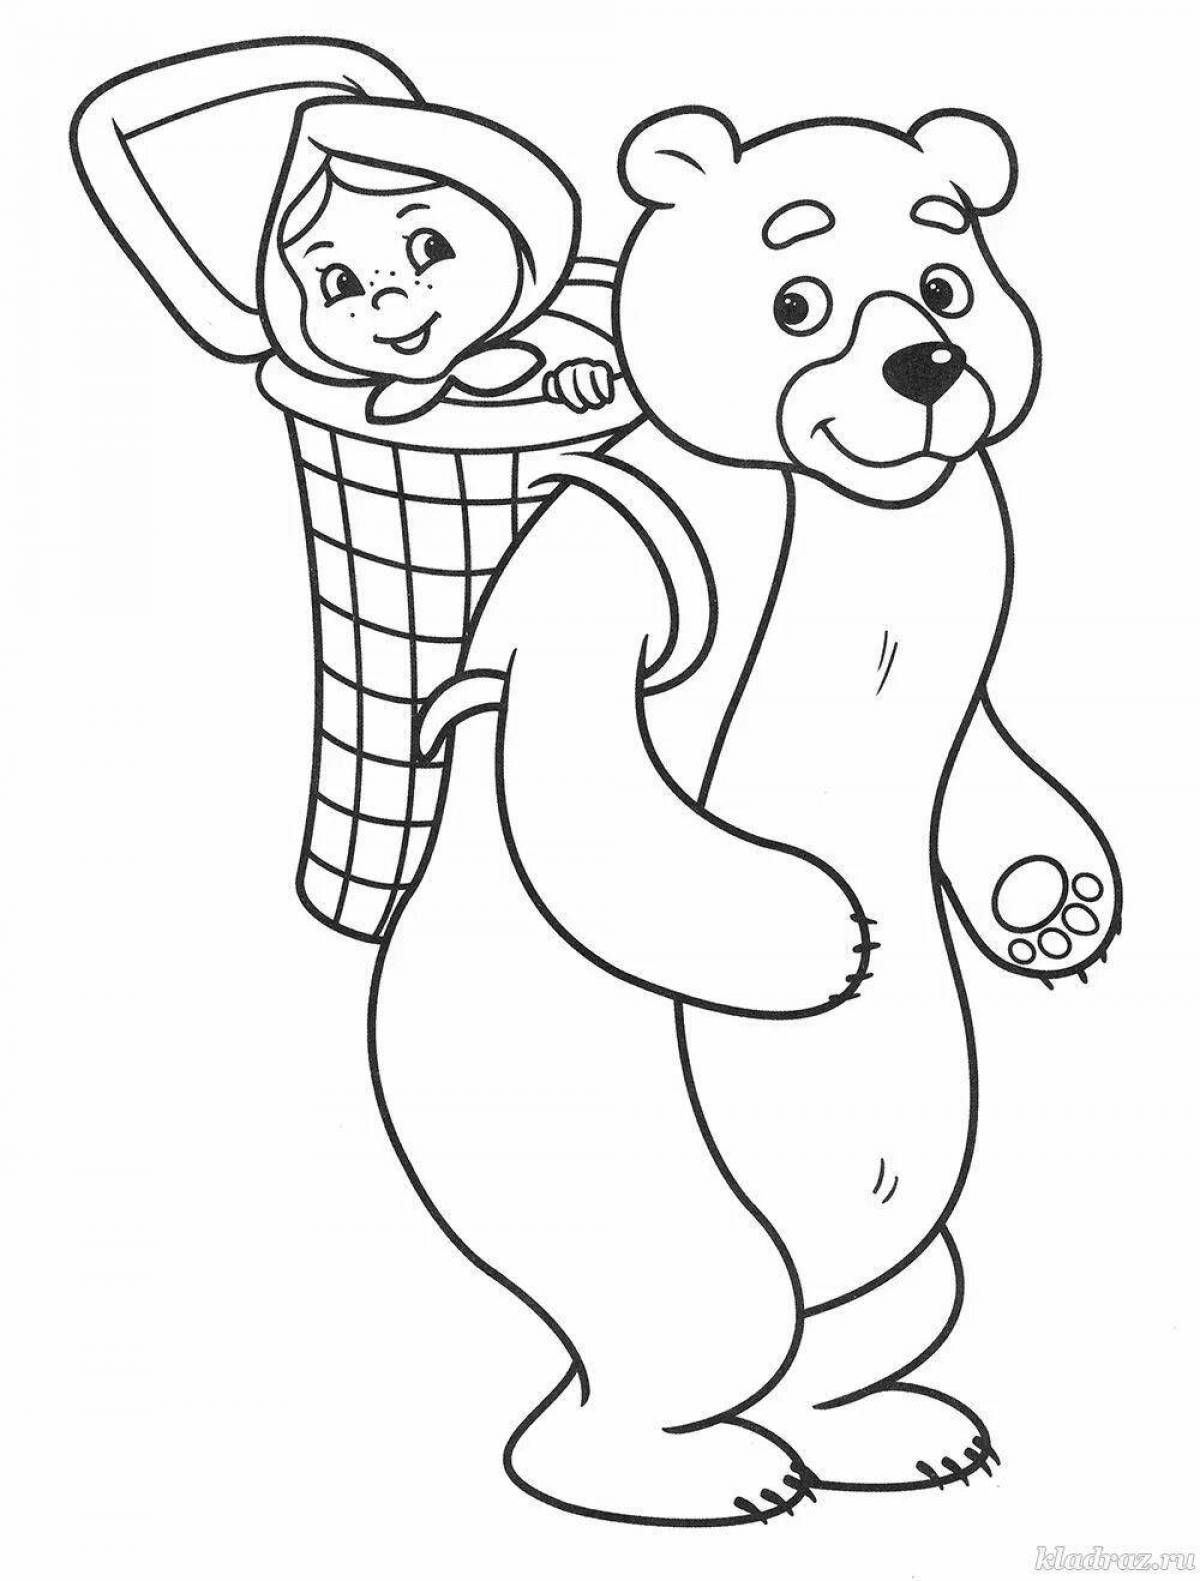 Медведь из сказки раскраска для детей